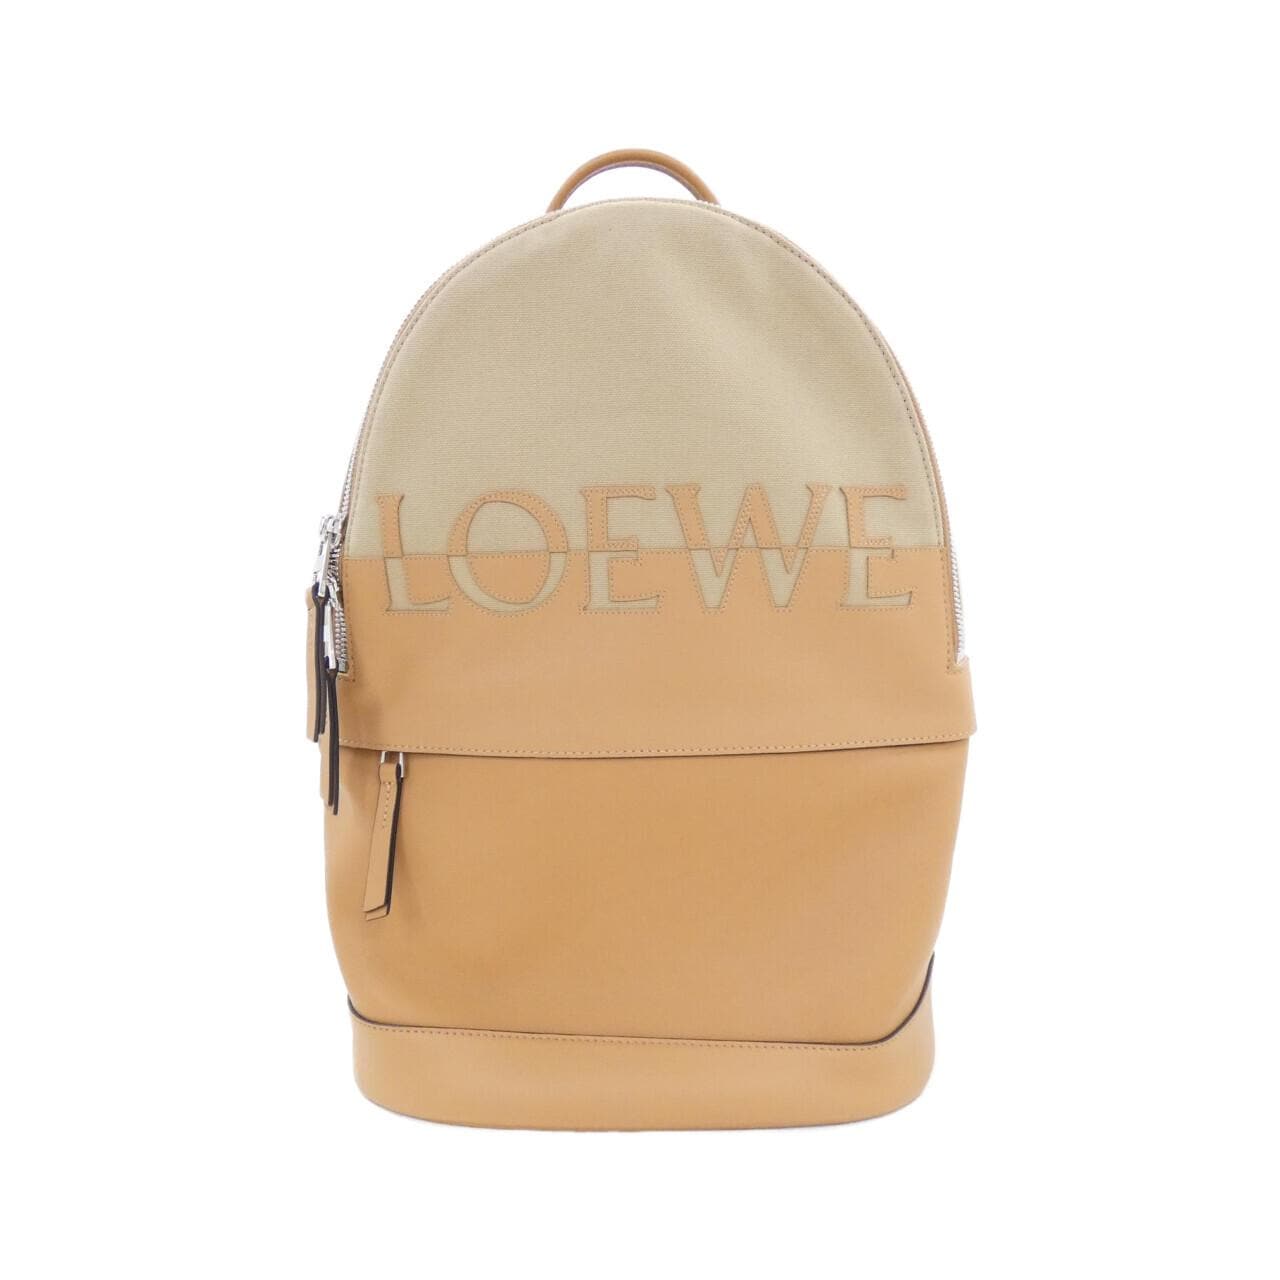 [新品] Loewe 圓形背包 B314278X01双肩包